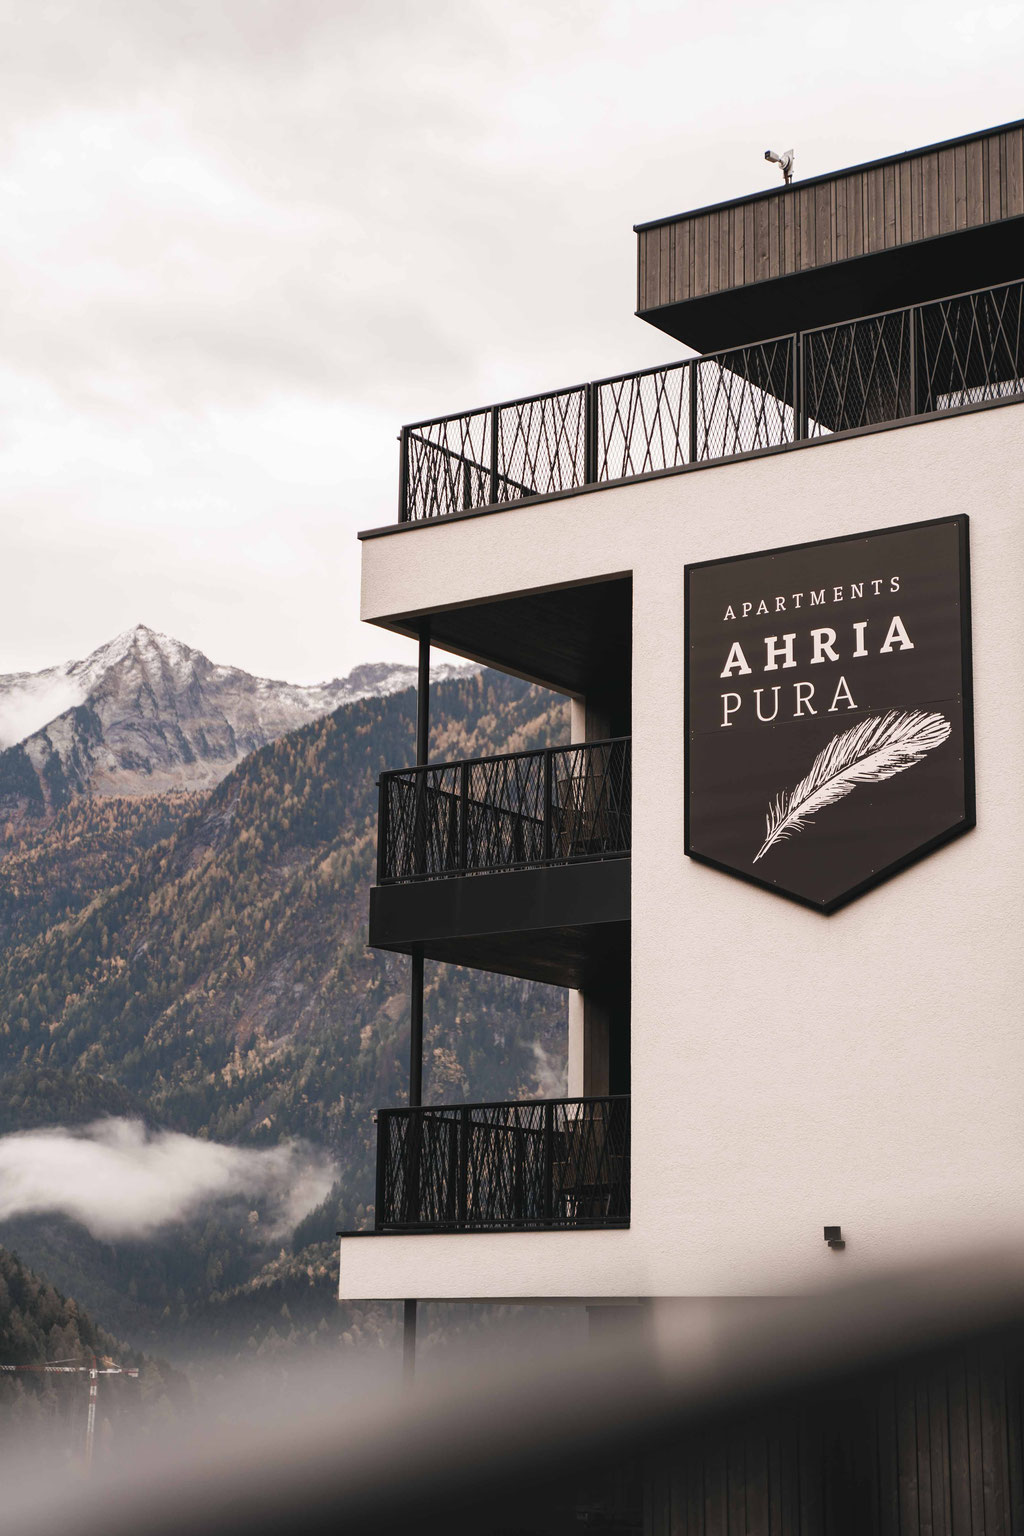  AHRIA PURA APARTMENTS, Aparthotel, Sand in Taufers - Tauferer Ahrntal - Südtirol/Italien ... Member of Mountain Hideaways - die schönsten Hotels in den Alpen ©Lena Sulzenbacher